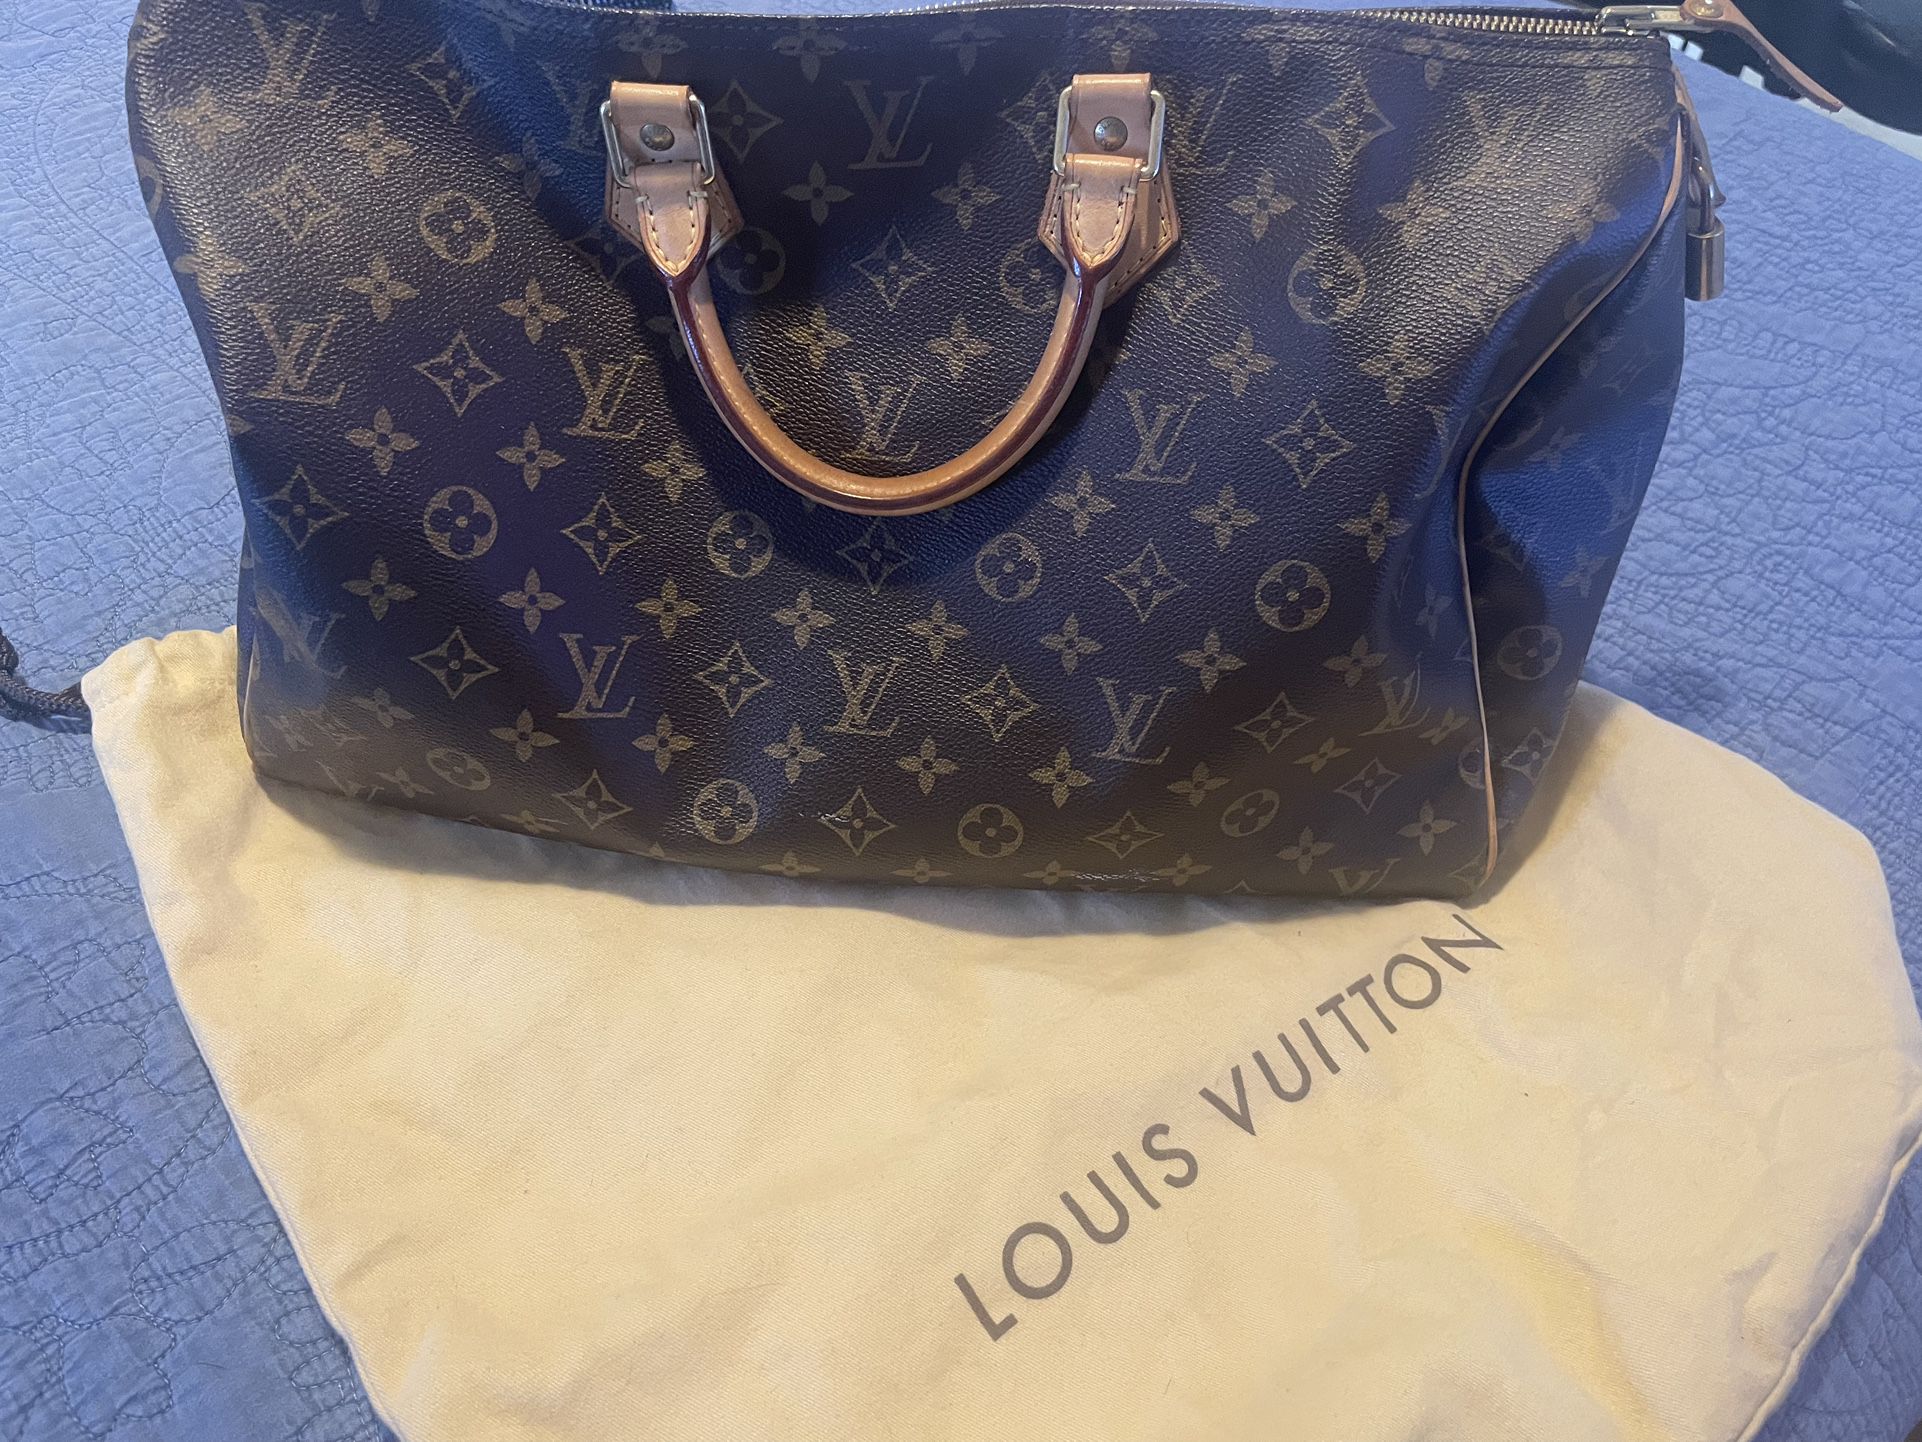 Louis Vuitton Speedy 25 for Sale in Modesto, CA - OfferUp